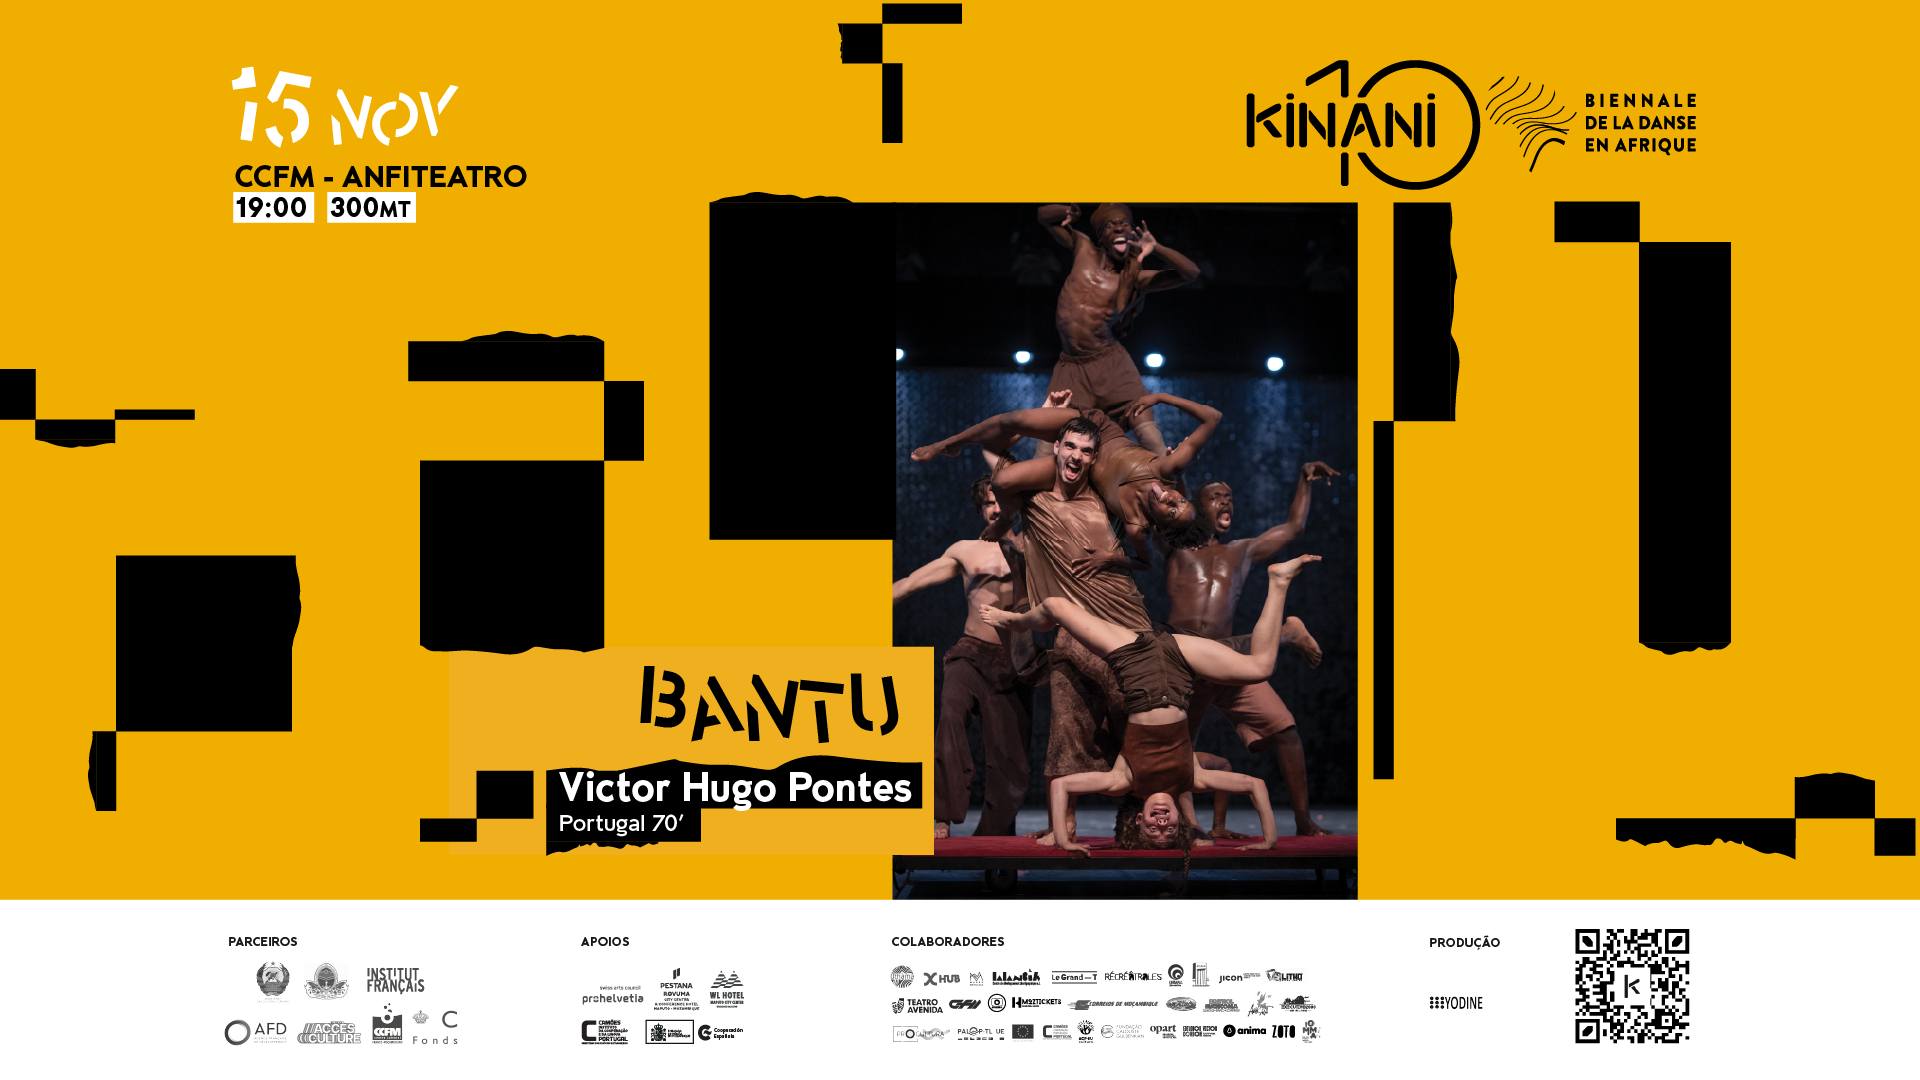 KINANI - Biennale de la Danse en Afrique | "Bantu" de Victor Hugo Pontes